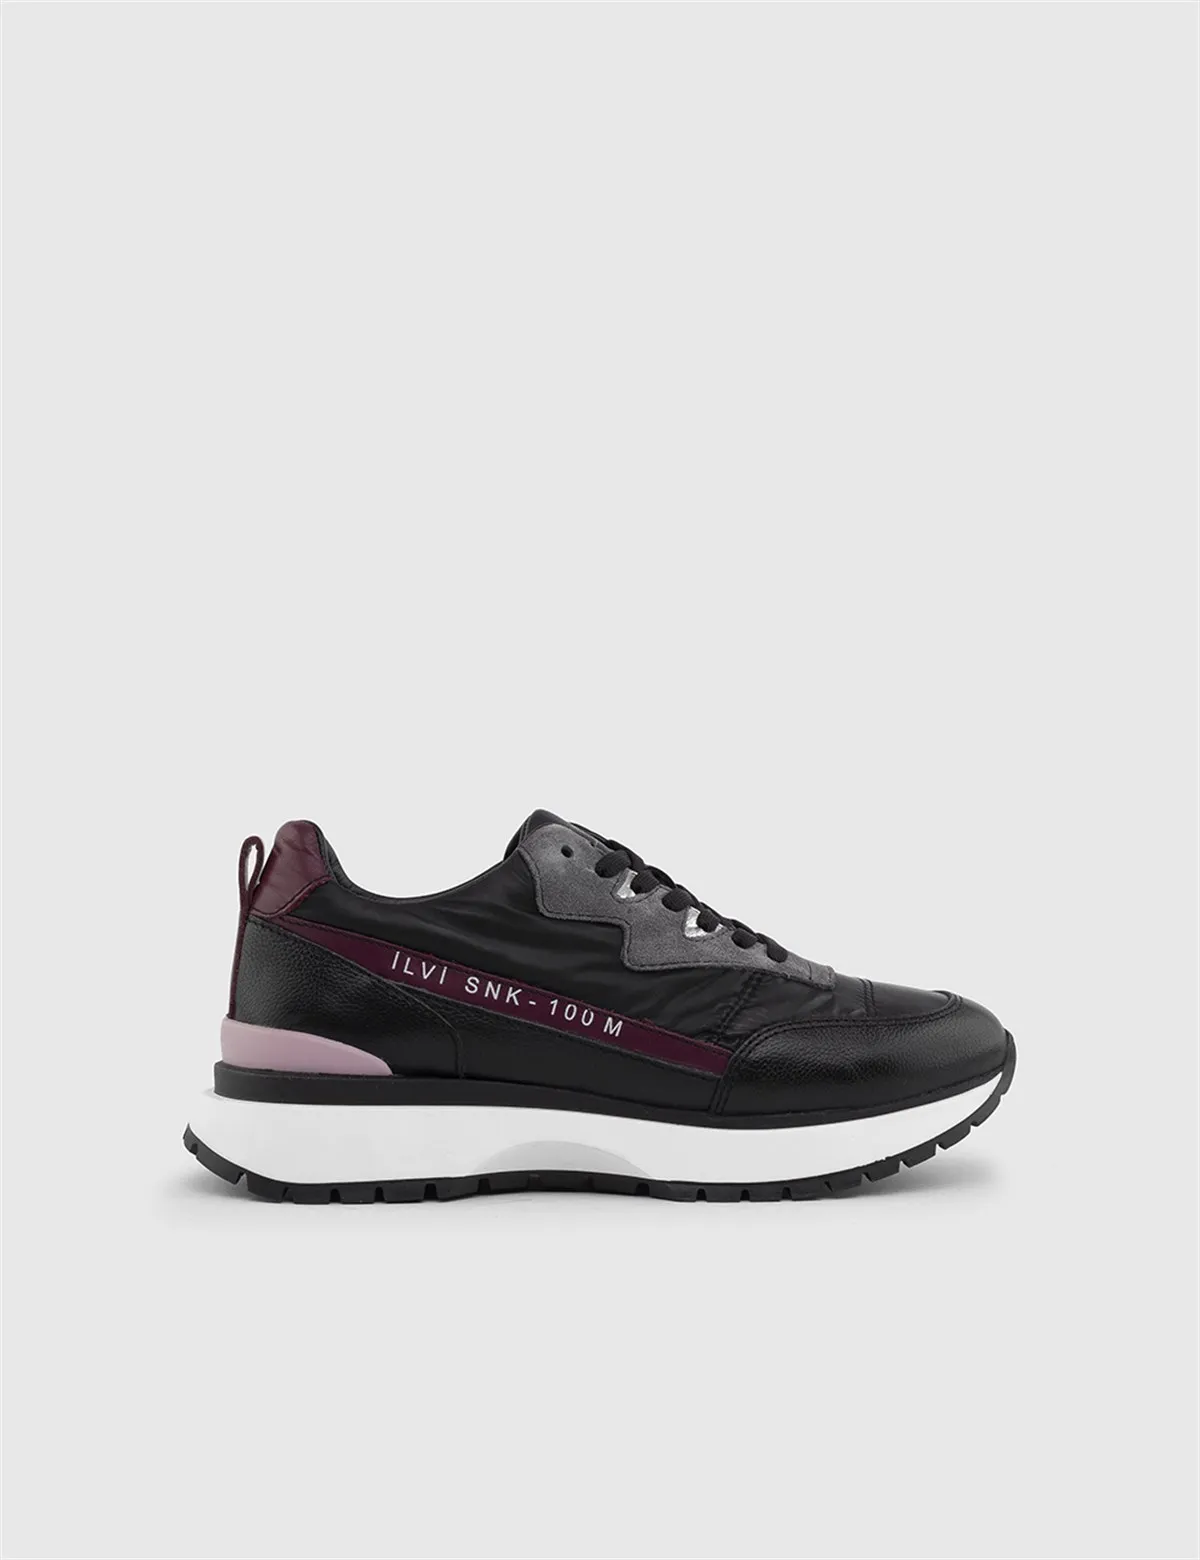 

ILVi-Genuine Leather Handmade Uwe Black-Purple Leather Women's Sneaker Women's Shoes 2022 Fall/Winter